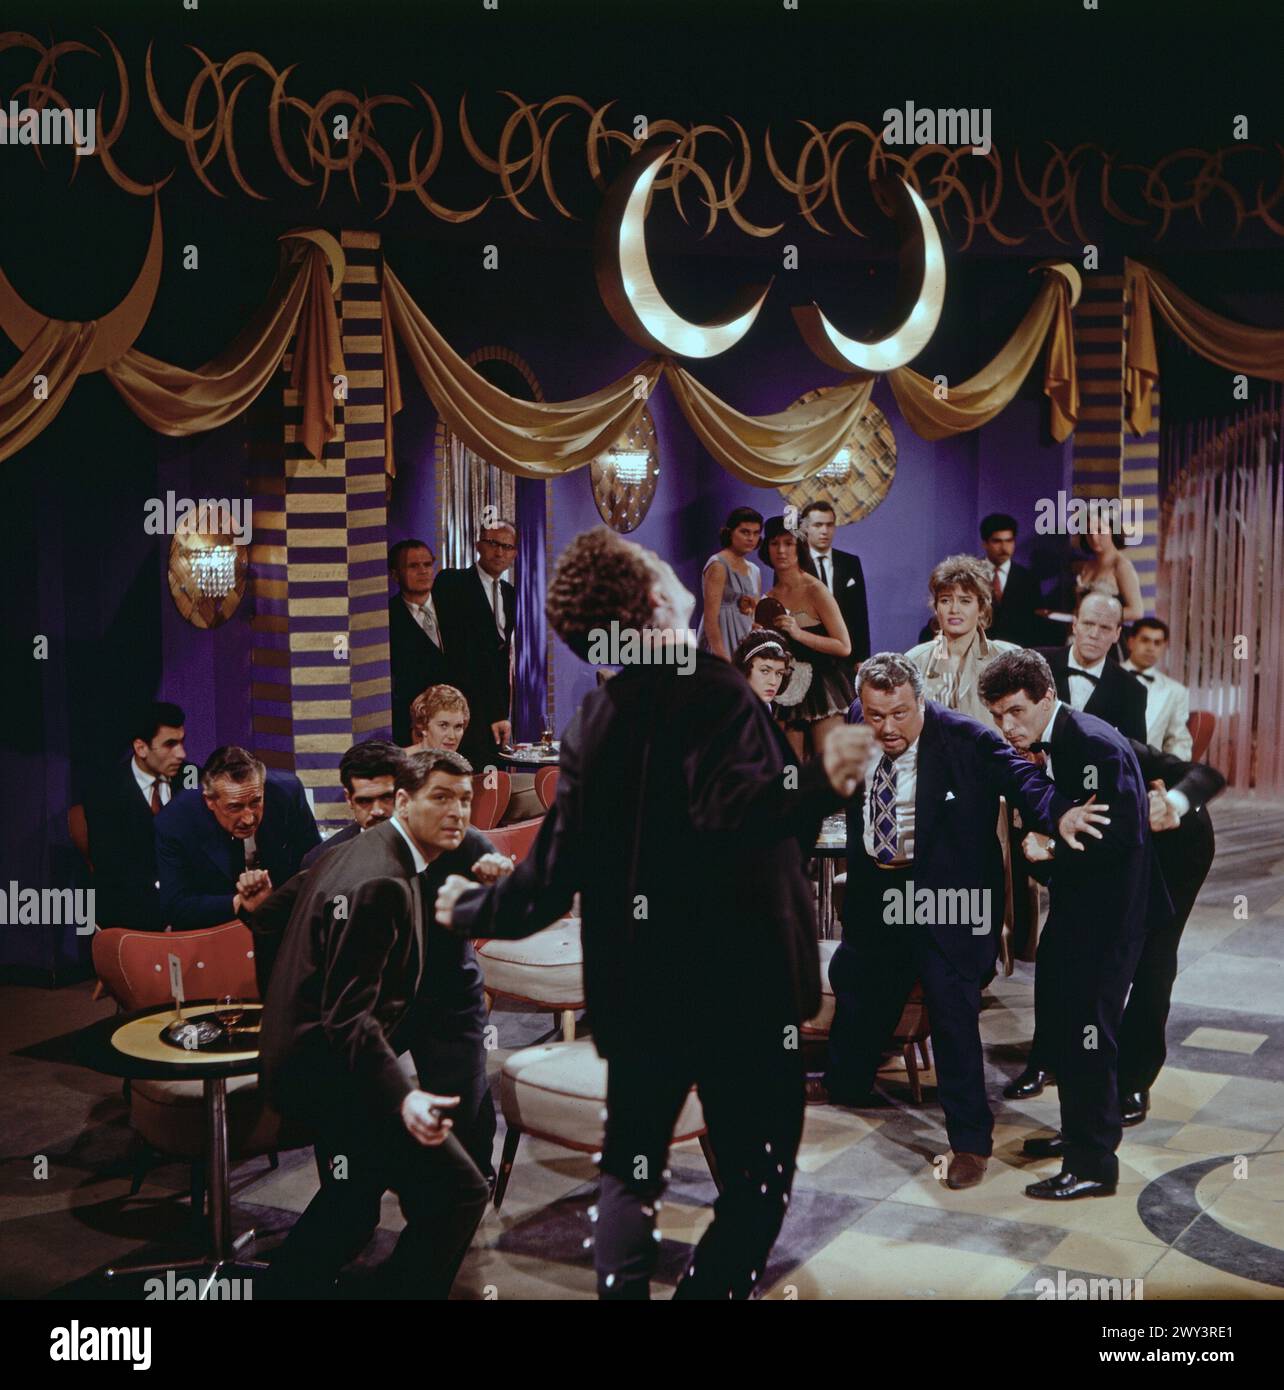 Szenenfoto mit Schlägerei in einer Nachtbar mit Abendgesellschaft, Deutschland um 1964 Stock Photo